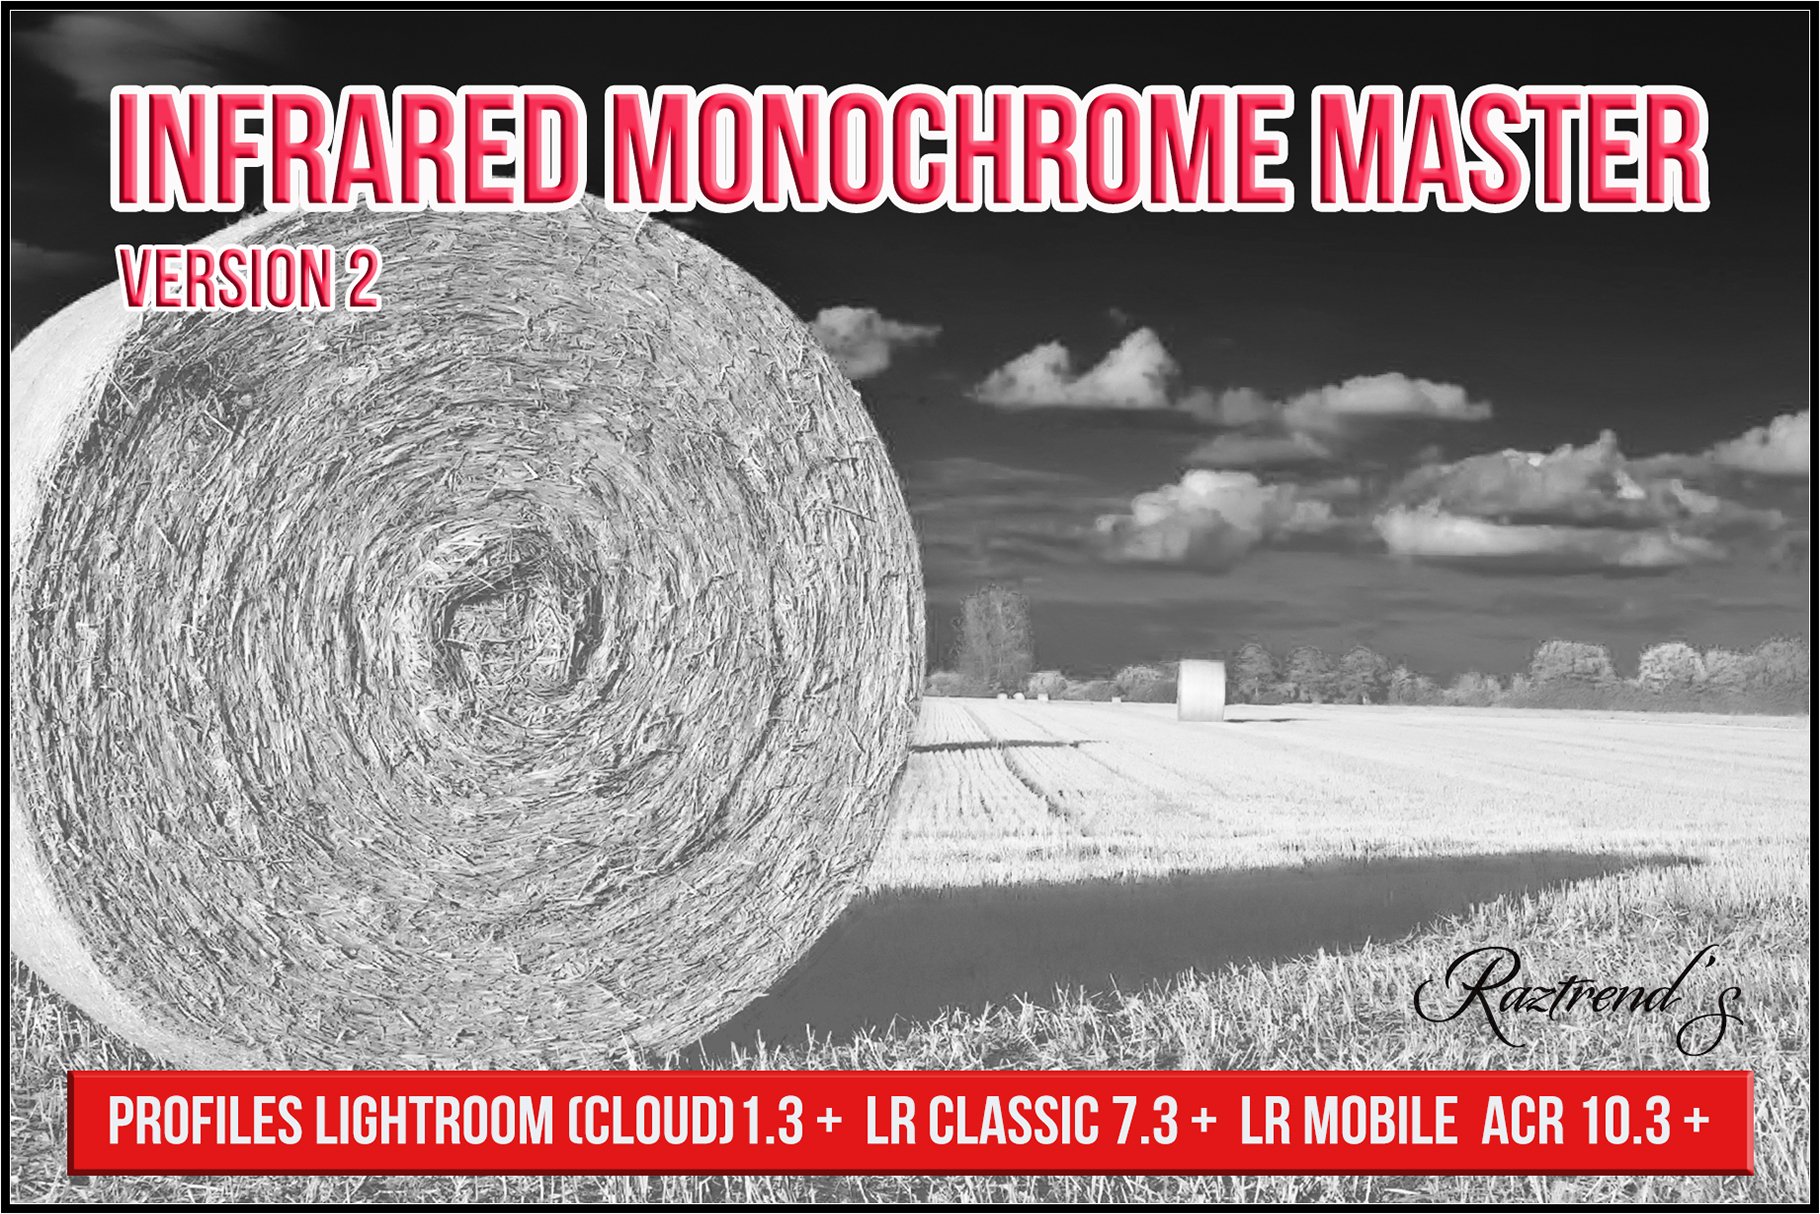 Infrared Monochrome Master Profilescover image.